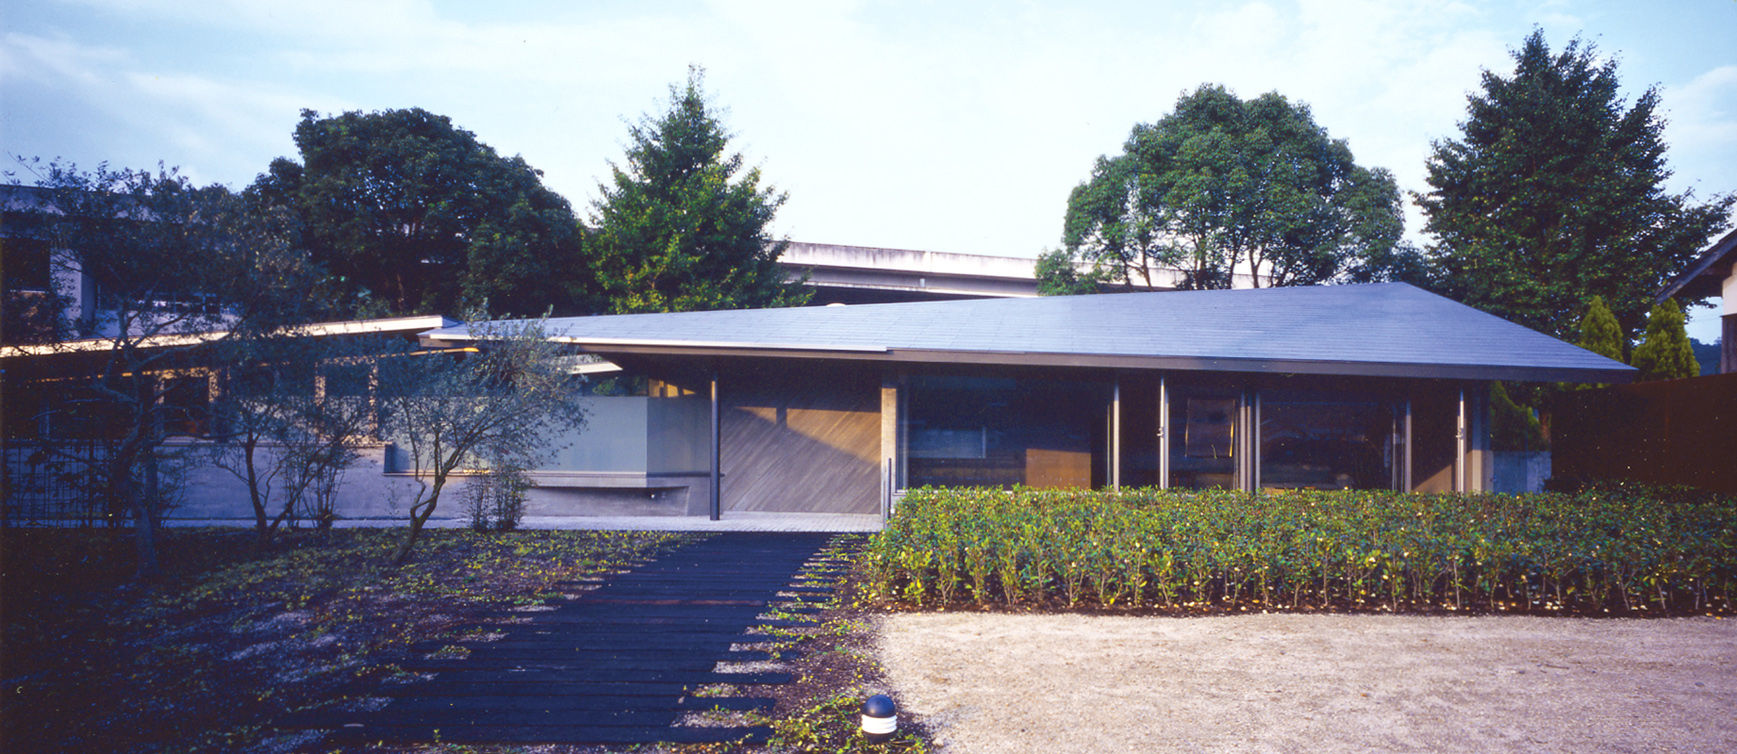 スタインウエイ フルサイズ グランドピアノのある住まい：吉備の家, JWA，Jun Watanabe & Associates JWA，Jun Watanabe & Associates Modern houses